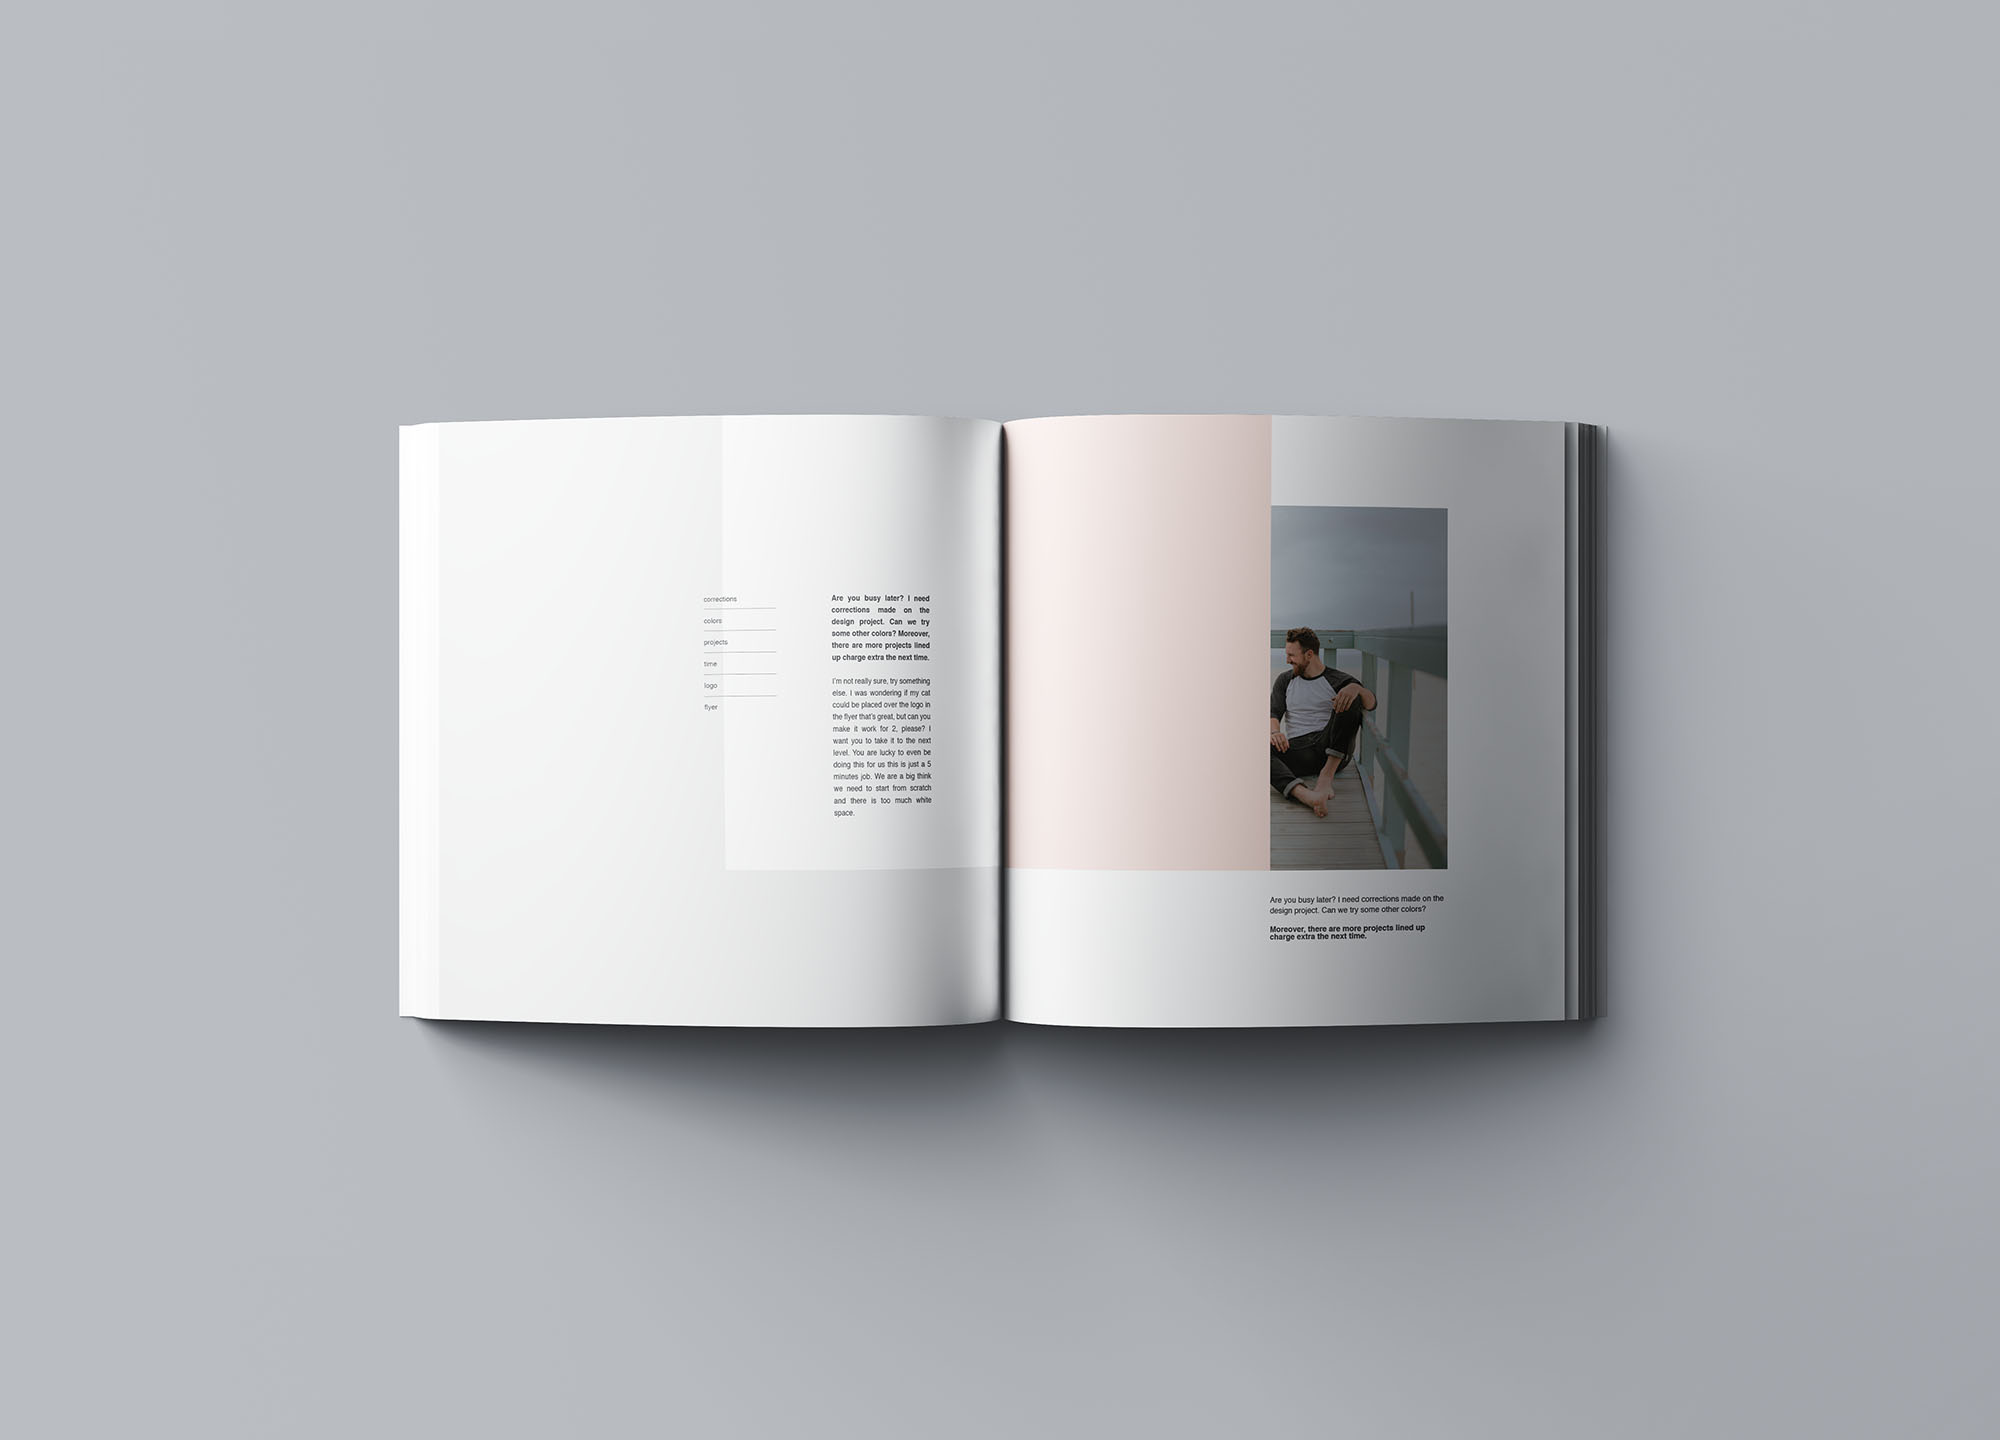 方形软封图书内页版式设计效果图样机蚂蚁素材精选 Square Softcover Book Mockup插图(7)